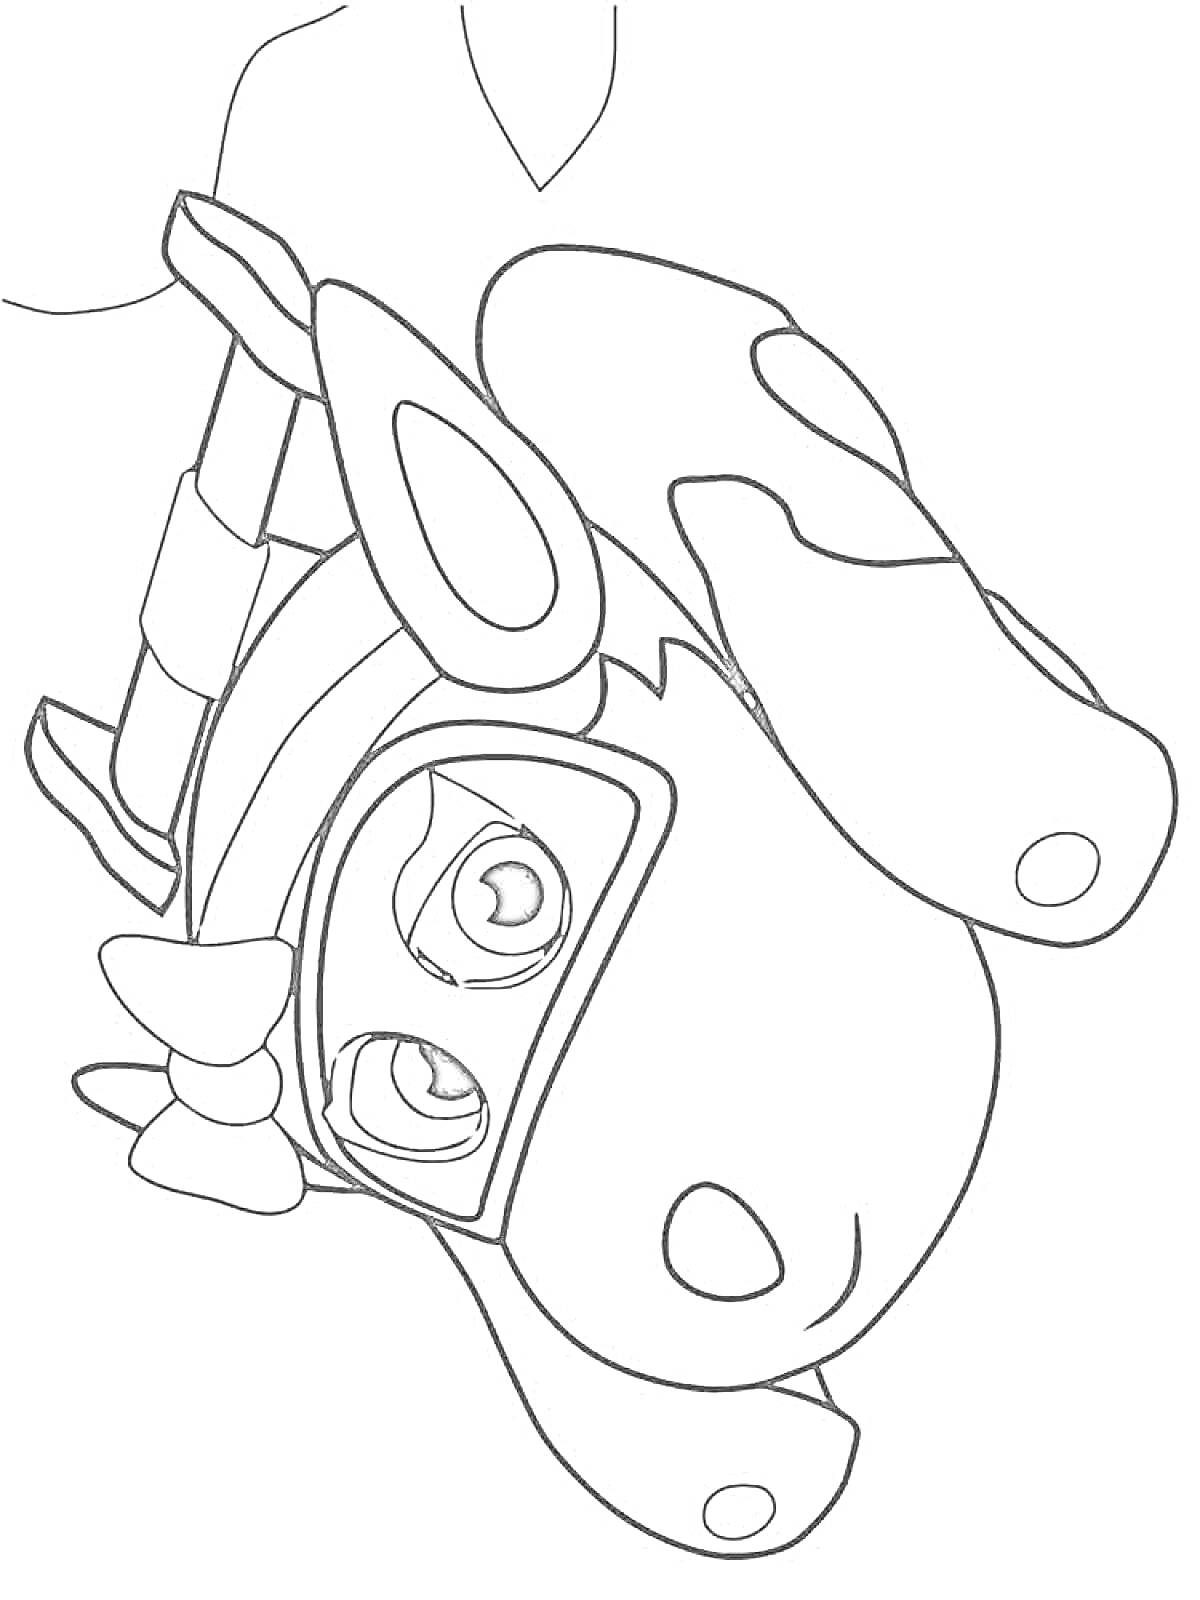 Раскраска Врумиз - корова с повязкой на голове и маской на глазах